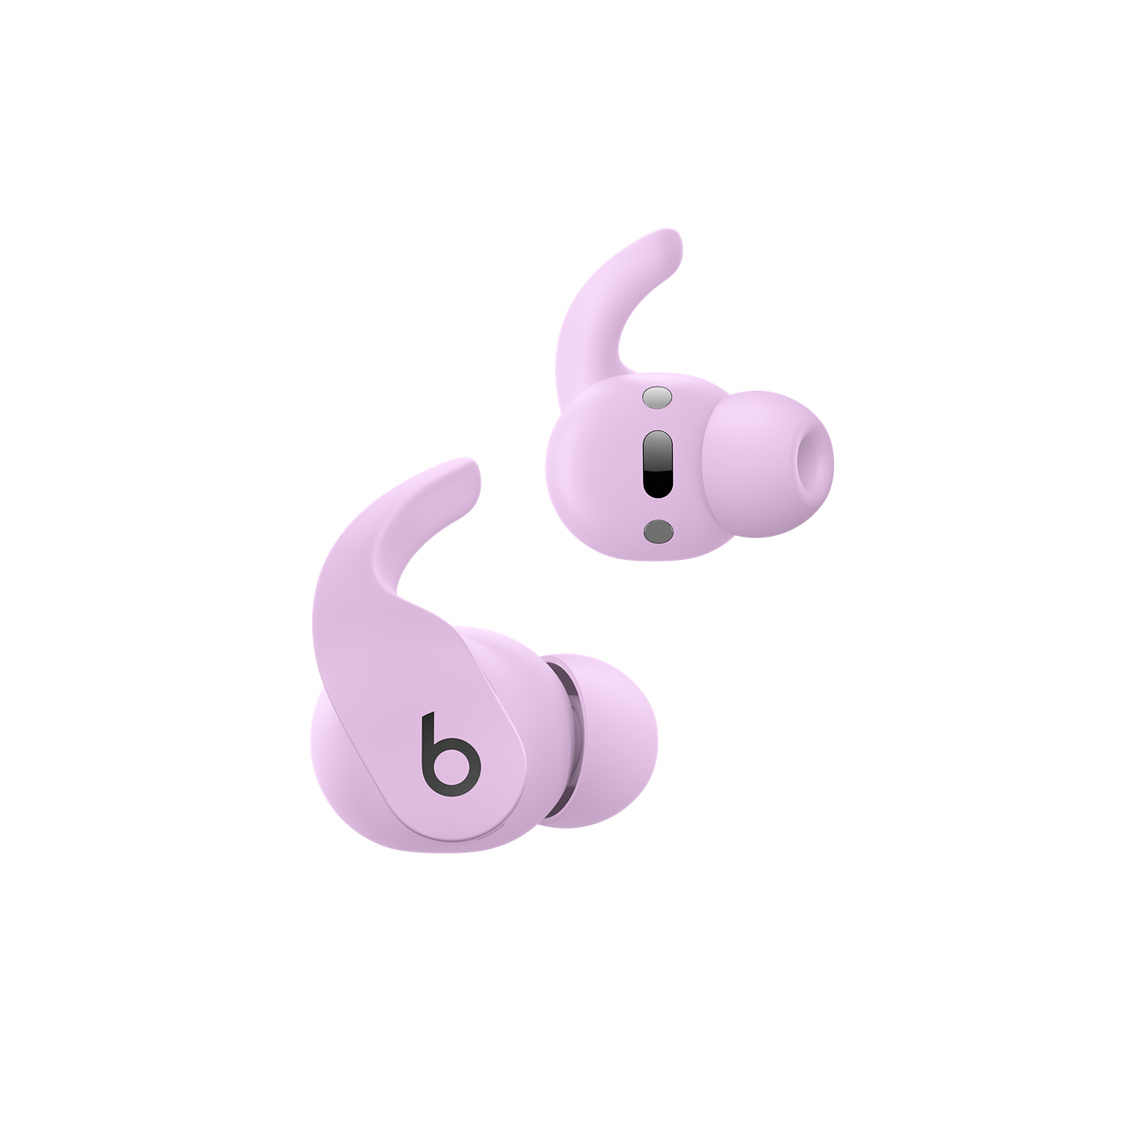 萤石紫 Beats Fit Pro 真无线耳机展示耳机上自带的控制按钮，可用来管理通话和控制音乐播放。 